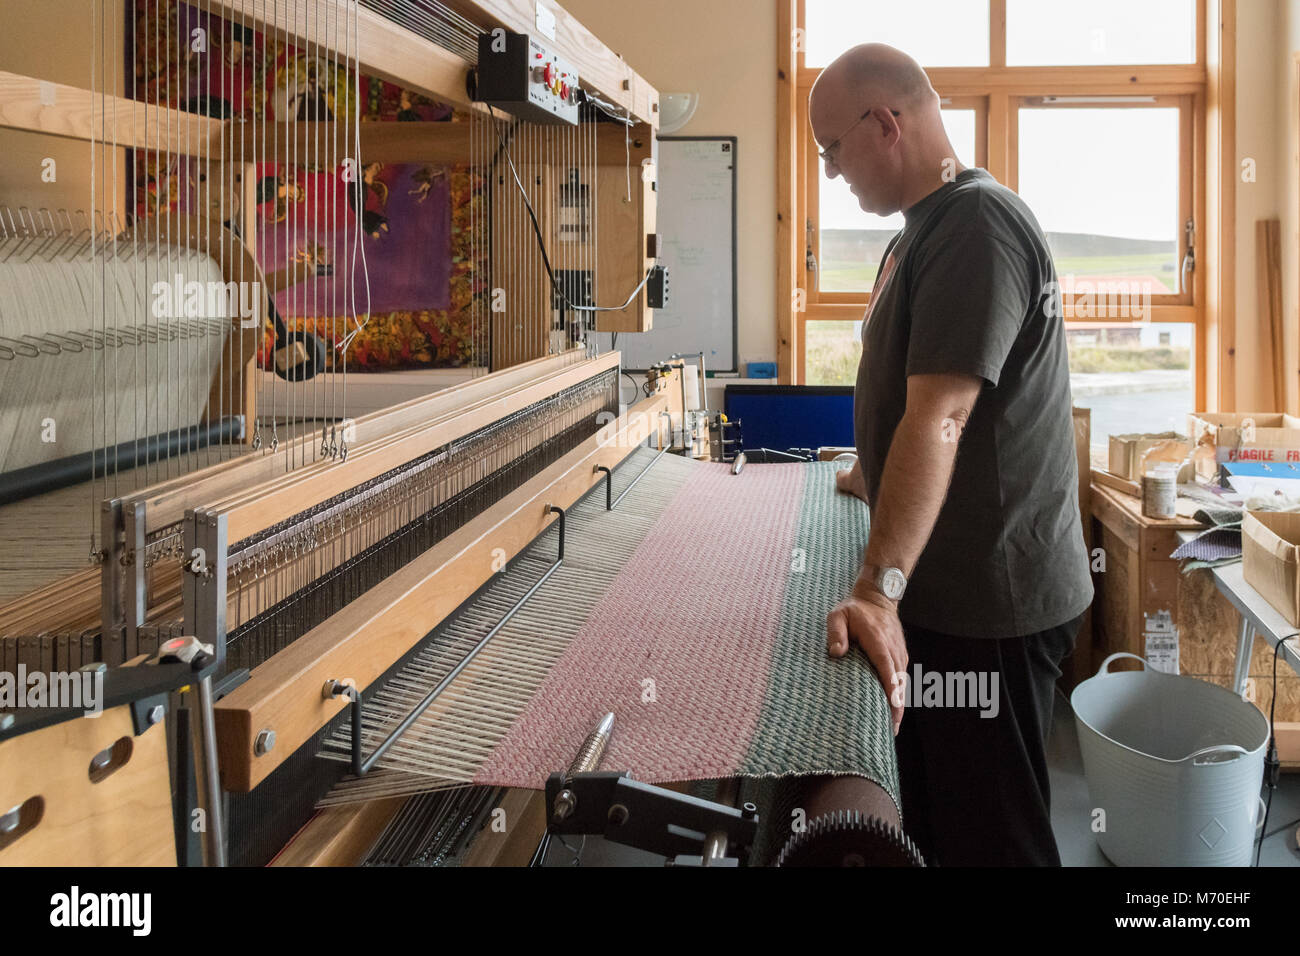 Globale Yell weben und textile Design Studio, Teil der Shetland Craft Trail, Yell, Shetland Inseln, Schottland, Großbritannien Stockfoto